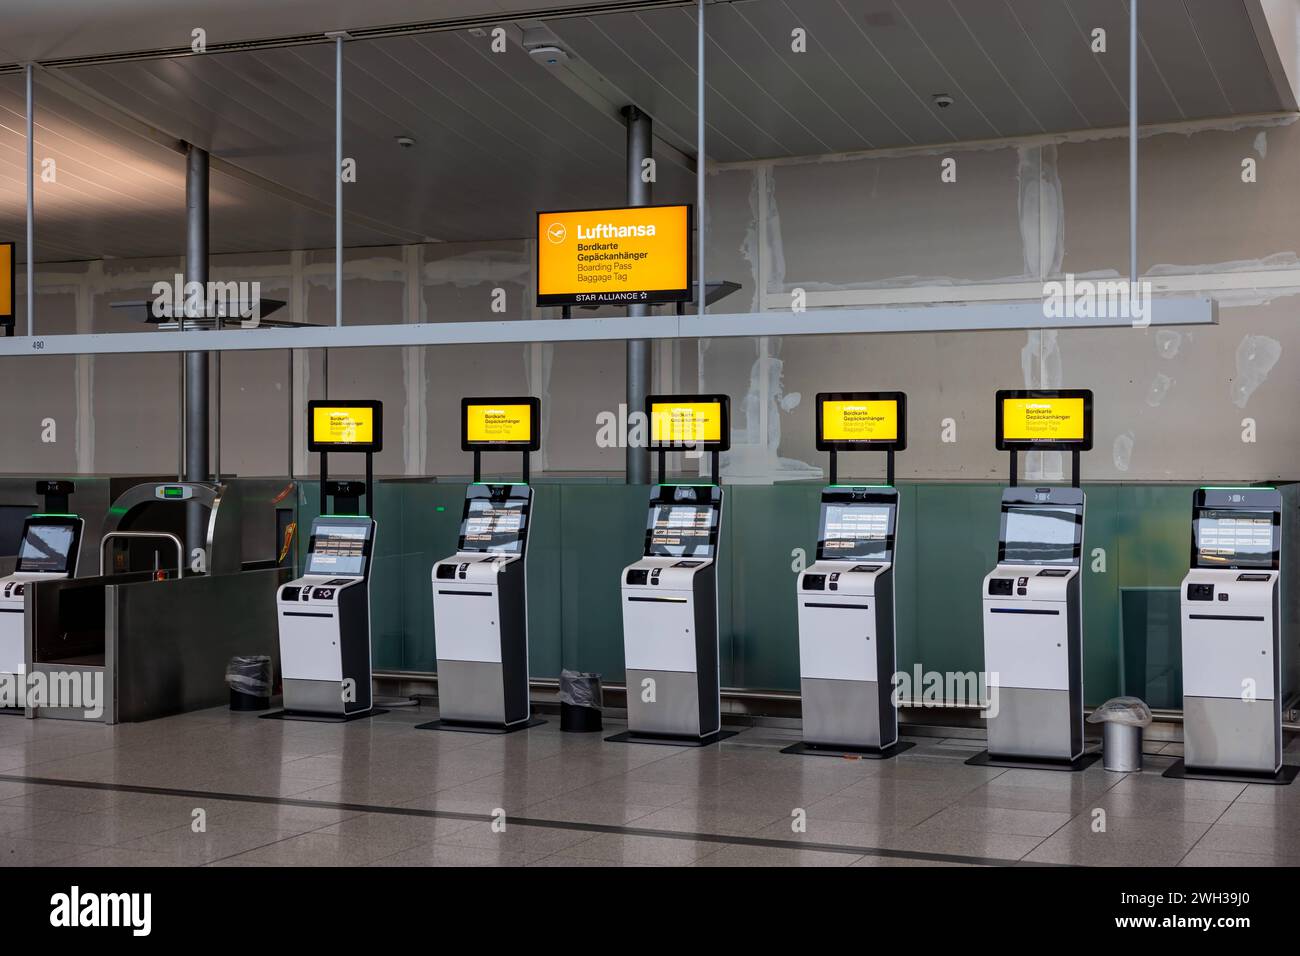 Lufthansa Streik in München Die Beschäftigten der Lufthansa am Münchner Flughafen streiken. Die Gewerkschaft ver.di geht davon aus, dass sich über 800 Lufthanseatinnen und Lufthanseaten an dem Streik beteiligt haben. Betroffen sind die Bereiche Passage, Check-In, Technik, Technik-Logistik, Technik-Logistik-Services, Engineering & Operation Services, Cargo, Technical Training und Flight Operation Center. Im Terminal am Flughafen fanden sich heute nur sehr wenige Passagiere ein. Lufthansa versucht, ca. 10-20% ihrer ursprünglichen Flüge durchführen zu können, auch innerdeutsche und Europaflüge. K Stock Photo